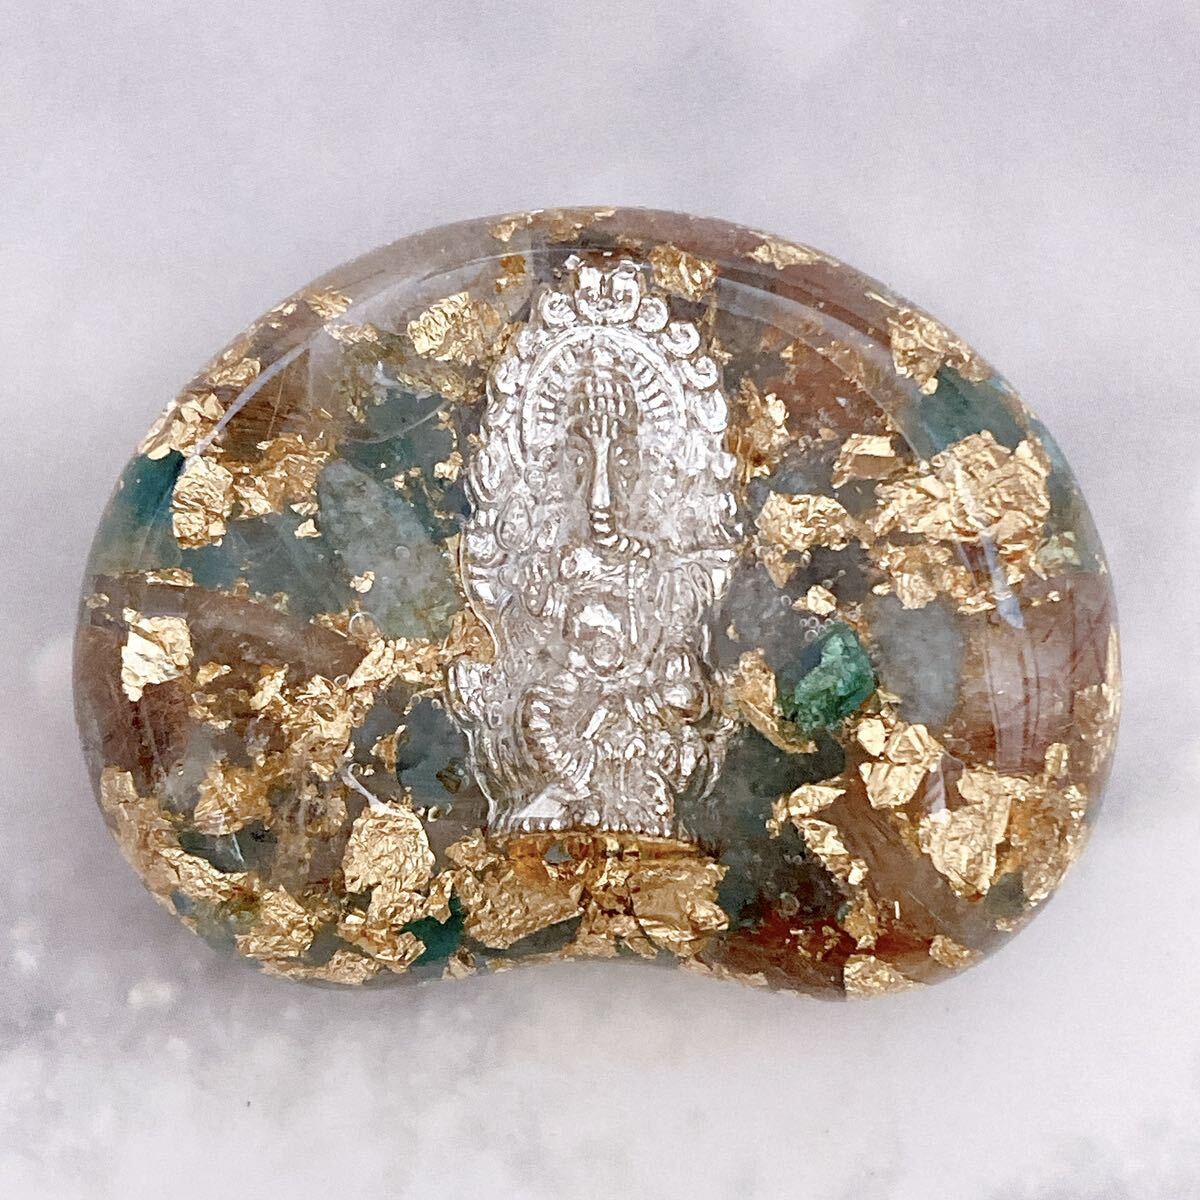 Amuleto de orgonita, piedra de agarre parecida a una haba, Ganesha, Artículos hechos a mano, interior, bienes varios, ornamento, objeto